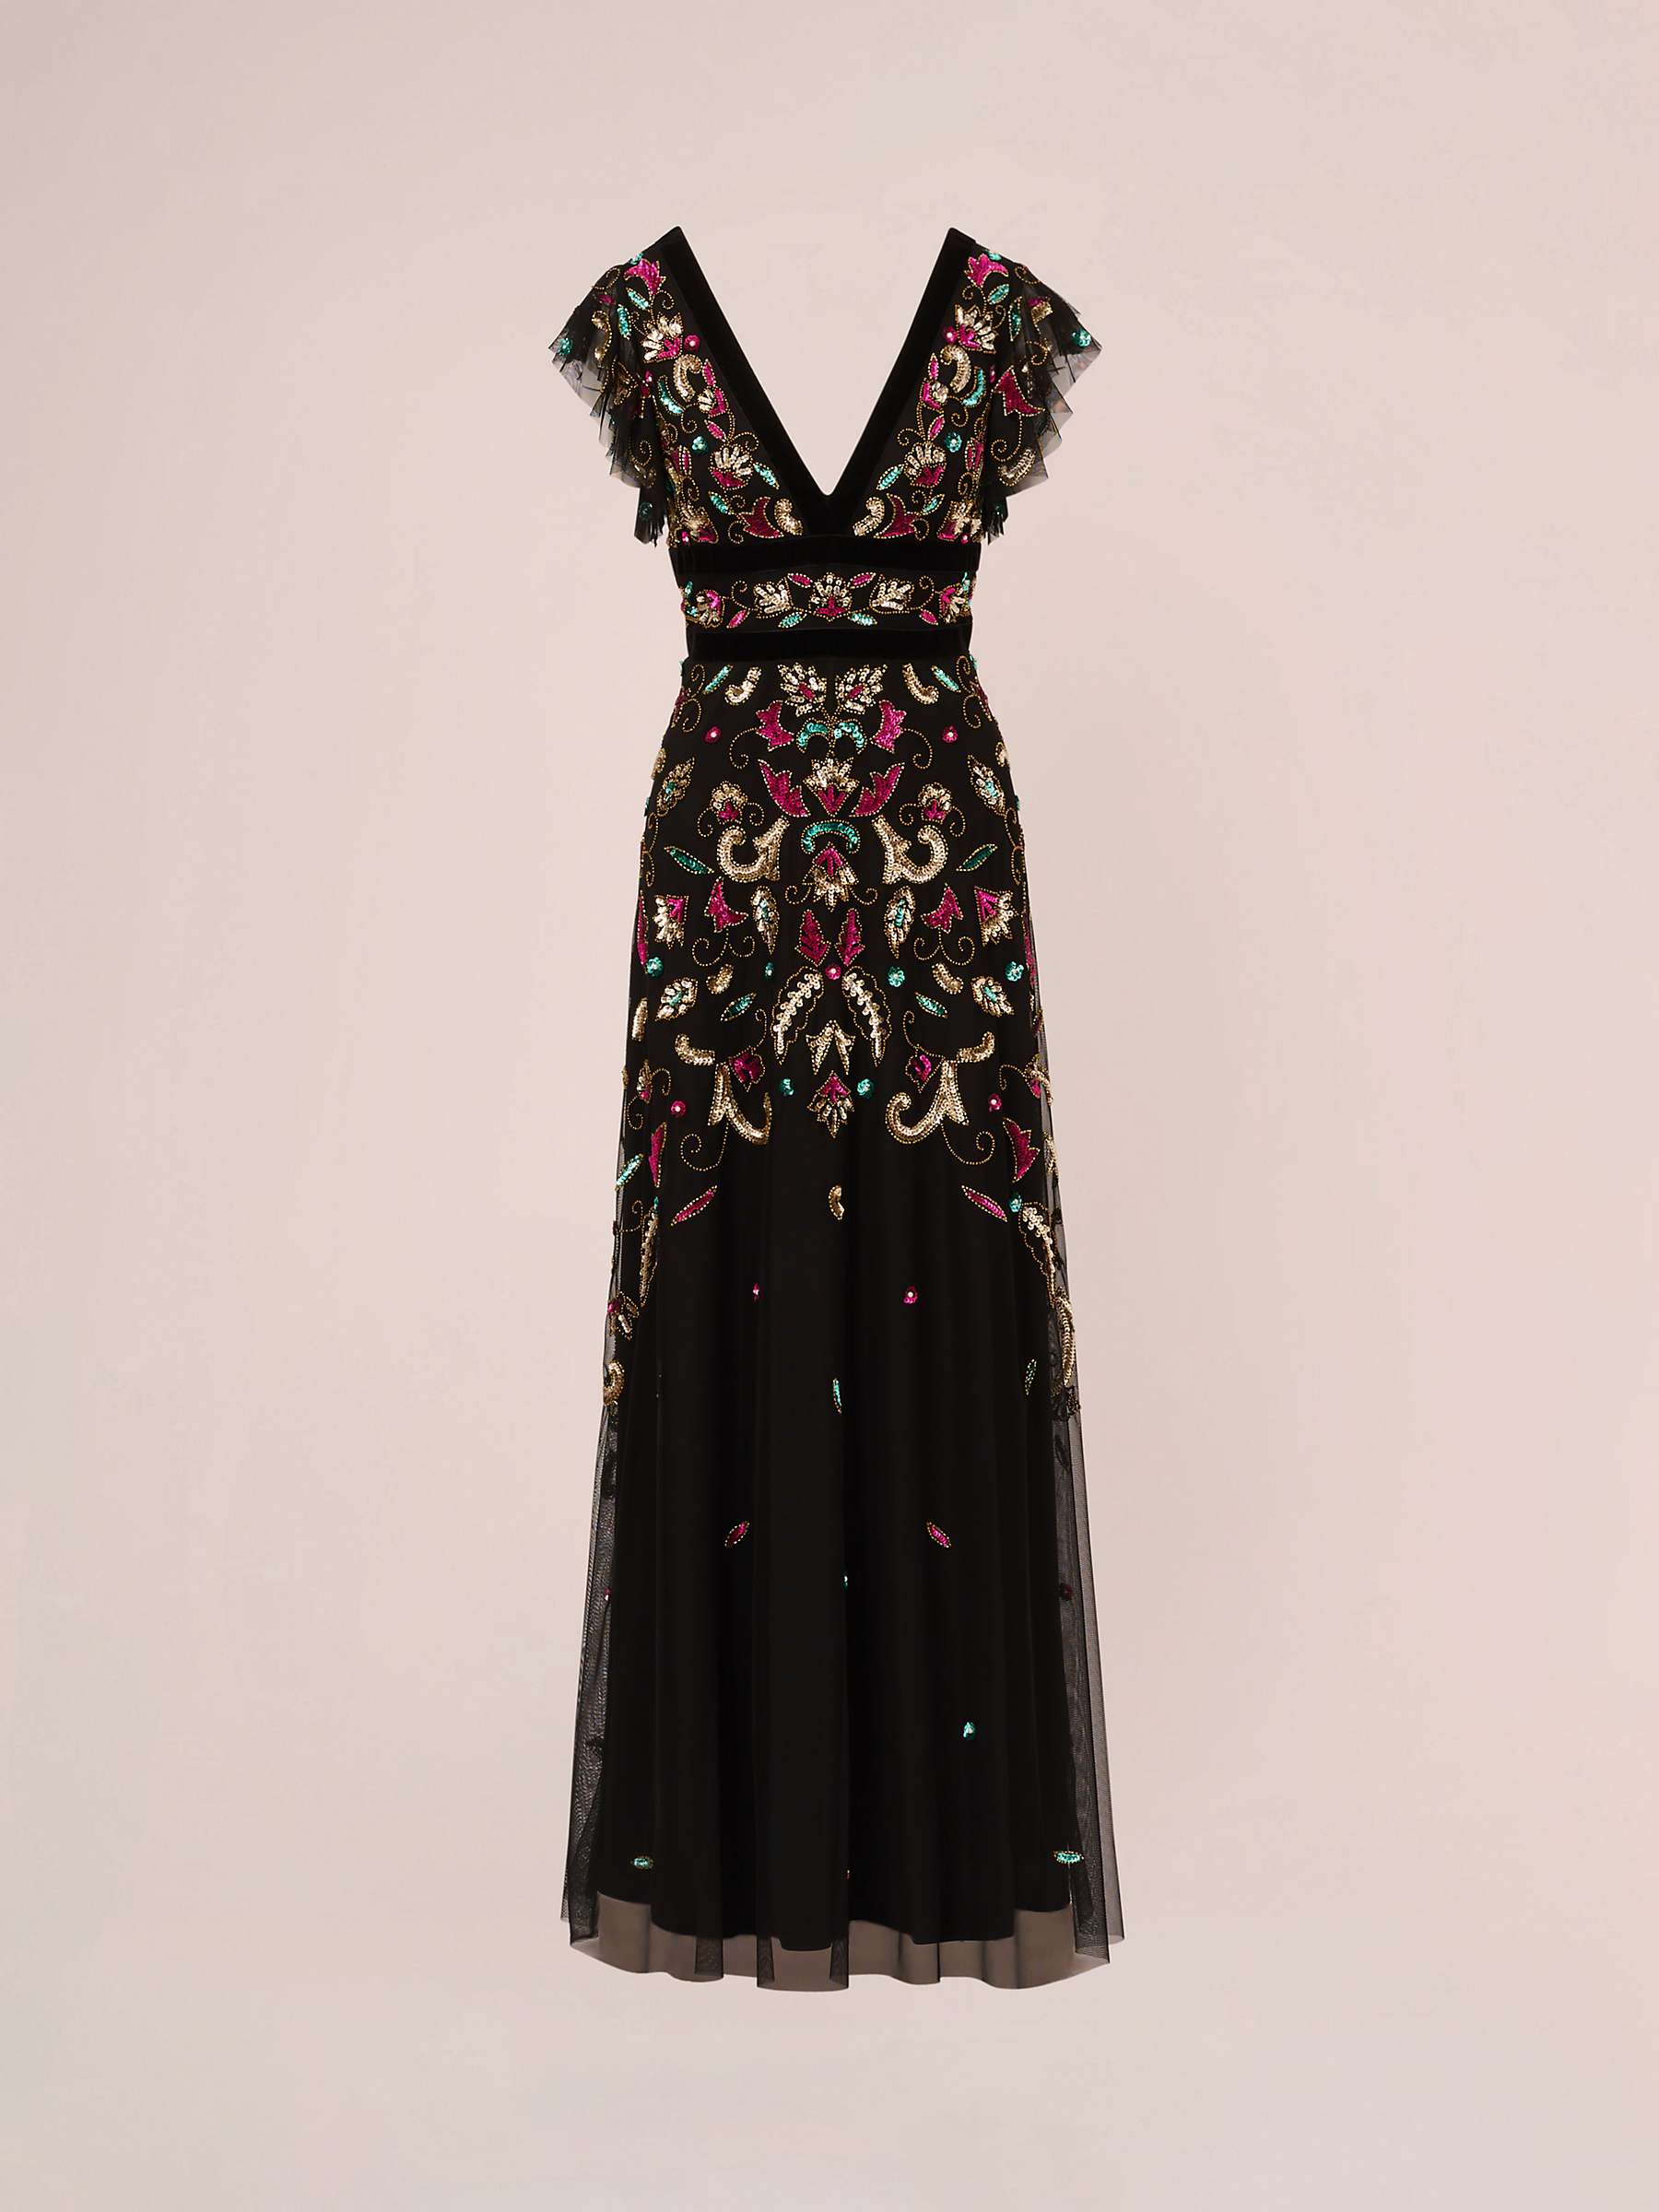 Buy Adrianna Papell Beaded Velvet Trim Maxi Dress, Black/Multi Online at johnlewis.com